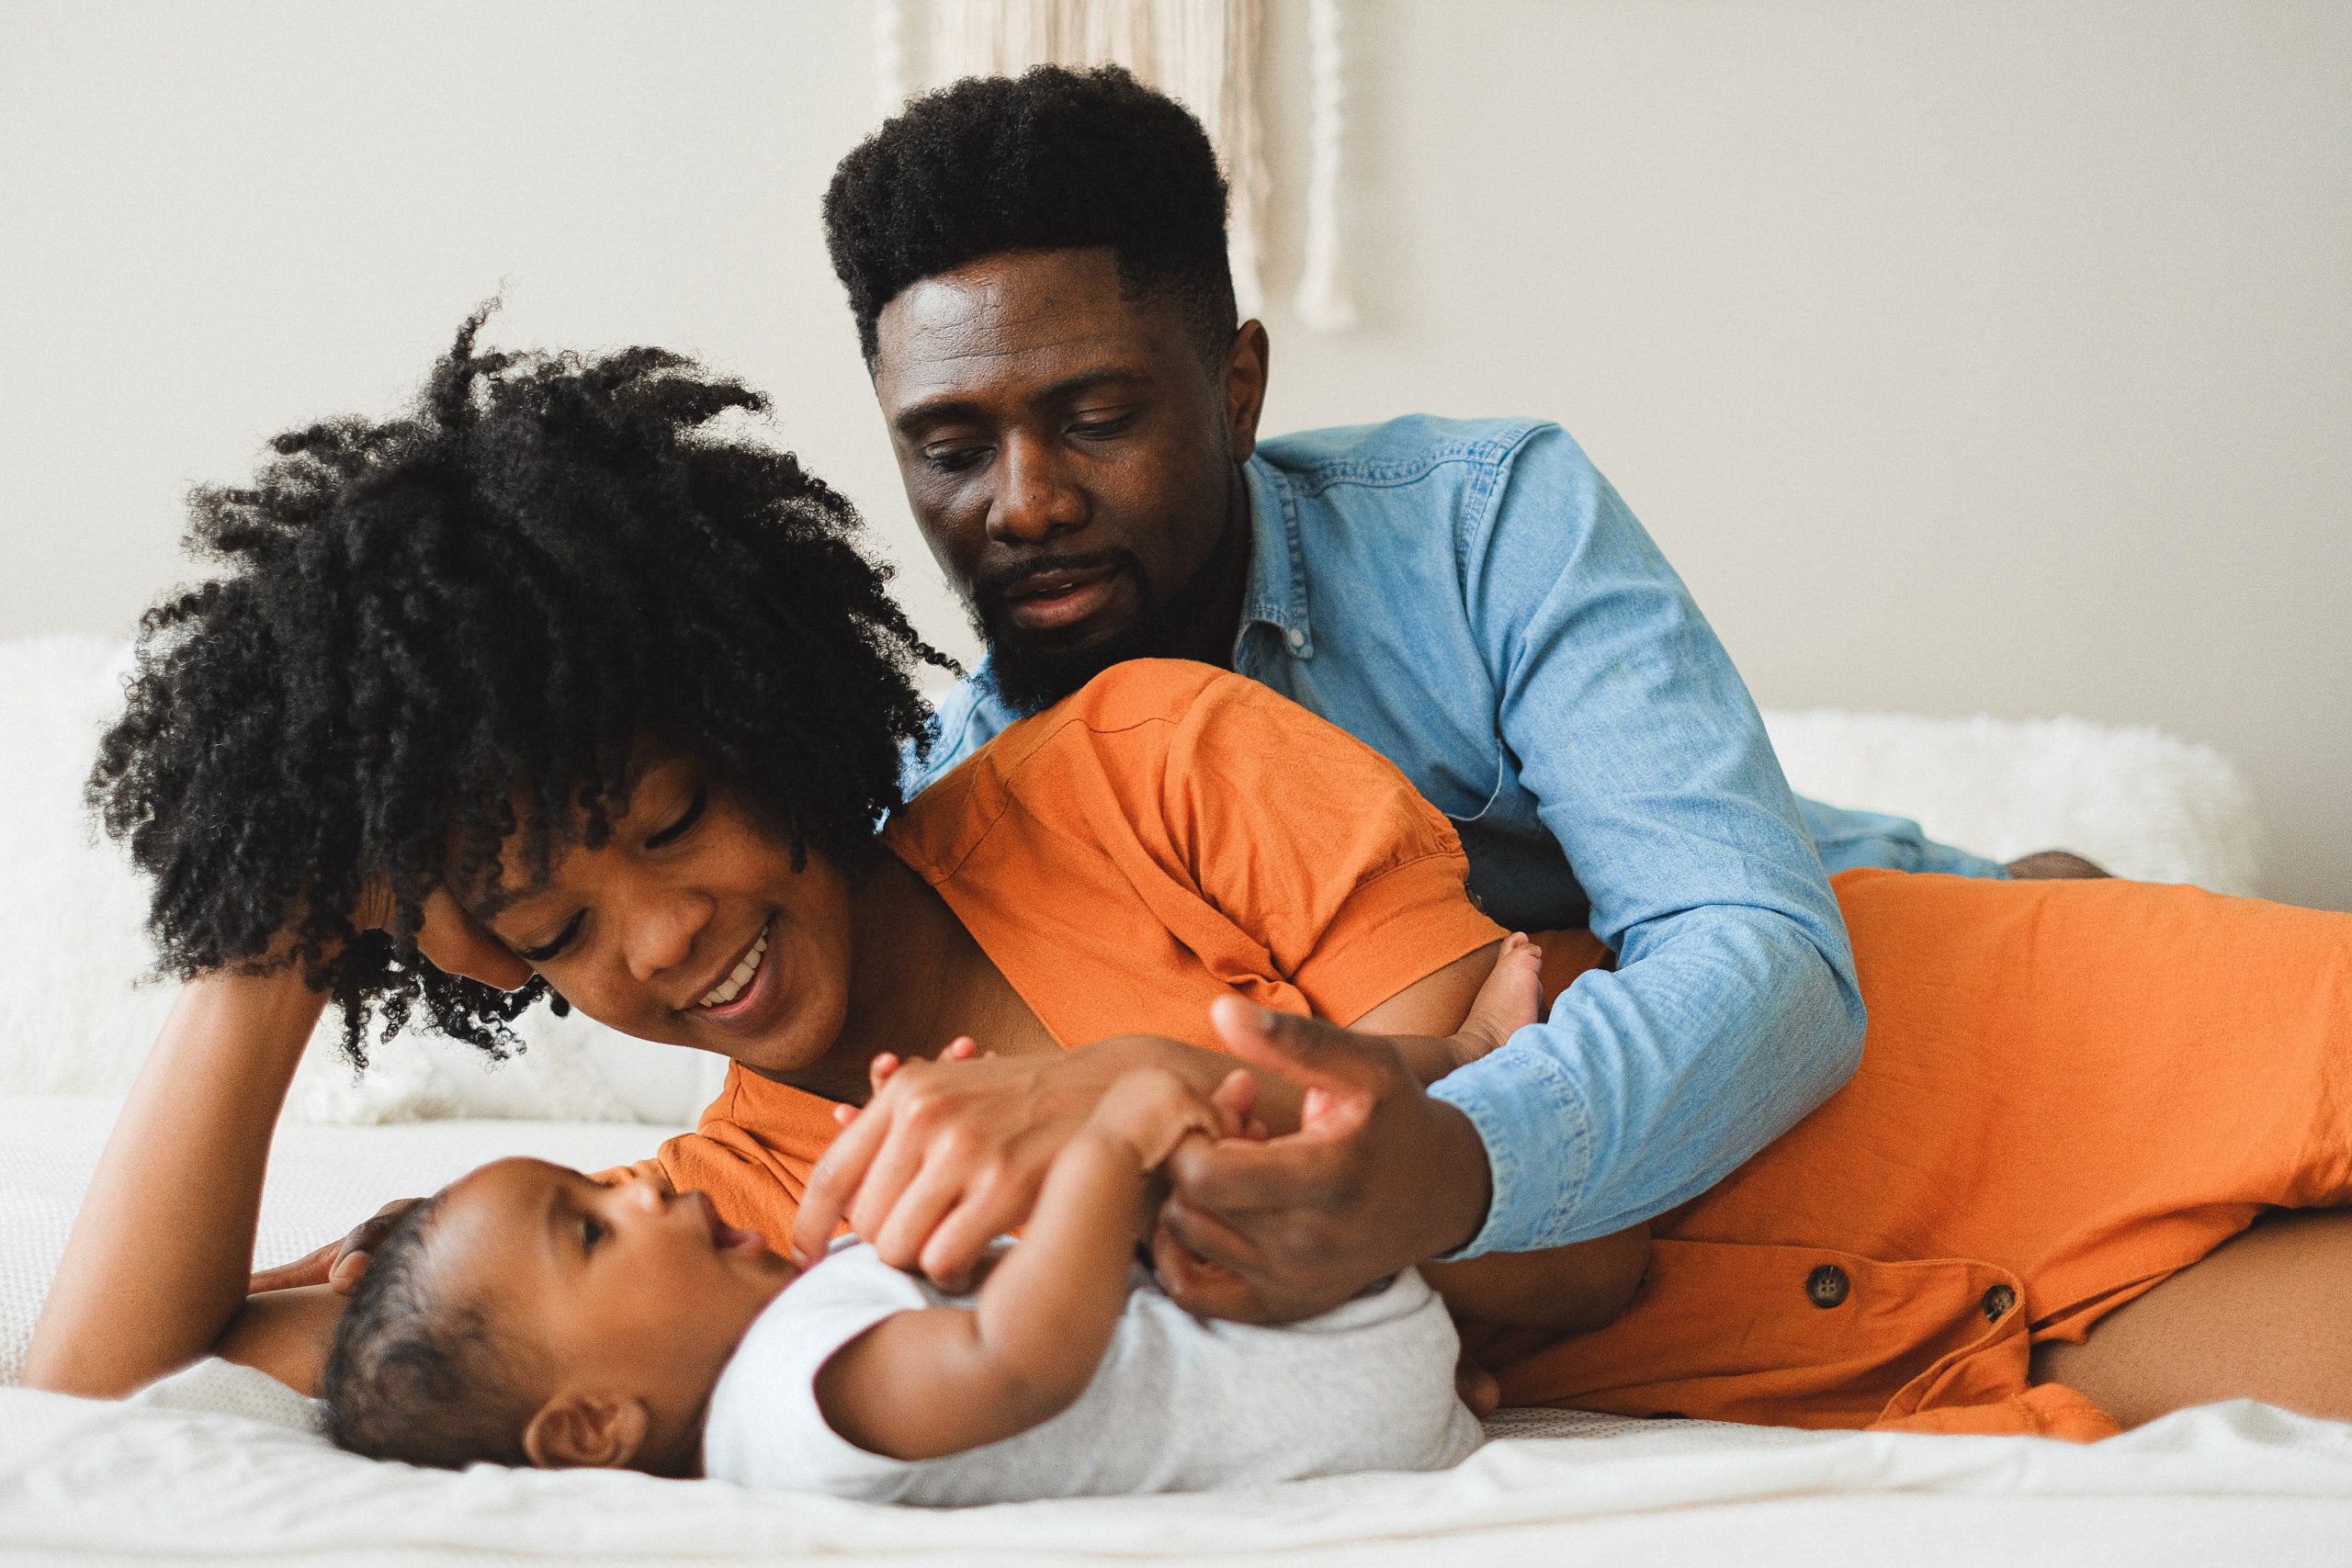 Eine fröhliche afroamerikanische Familie mit einem Baby auf dem Bett, die liebevolle Momente teilt, ein Bild, das die Bedeutung der finanziellen Absicherung durch eine Restkreditversicherung für unvorhergesehene Ereignisse im Familienleben symbolisiert.